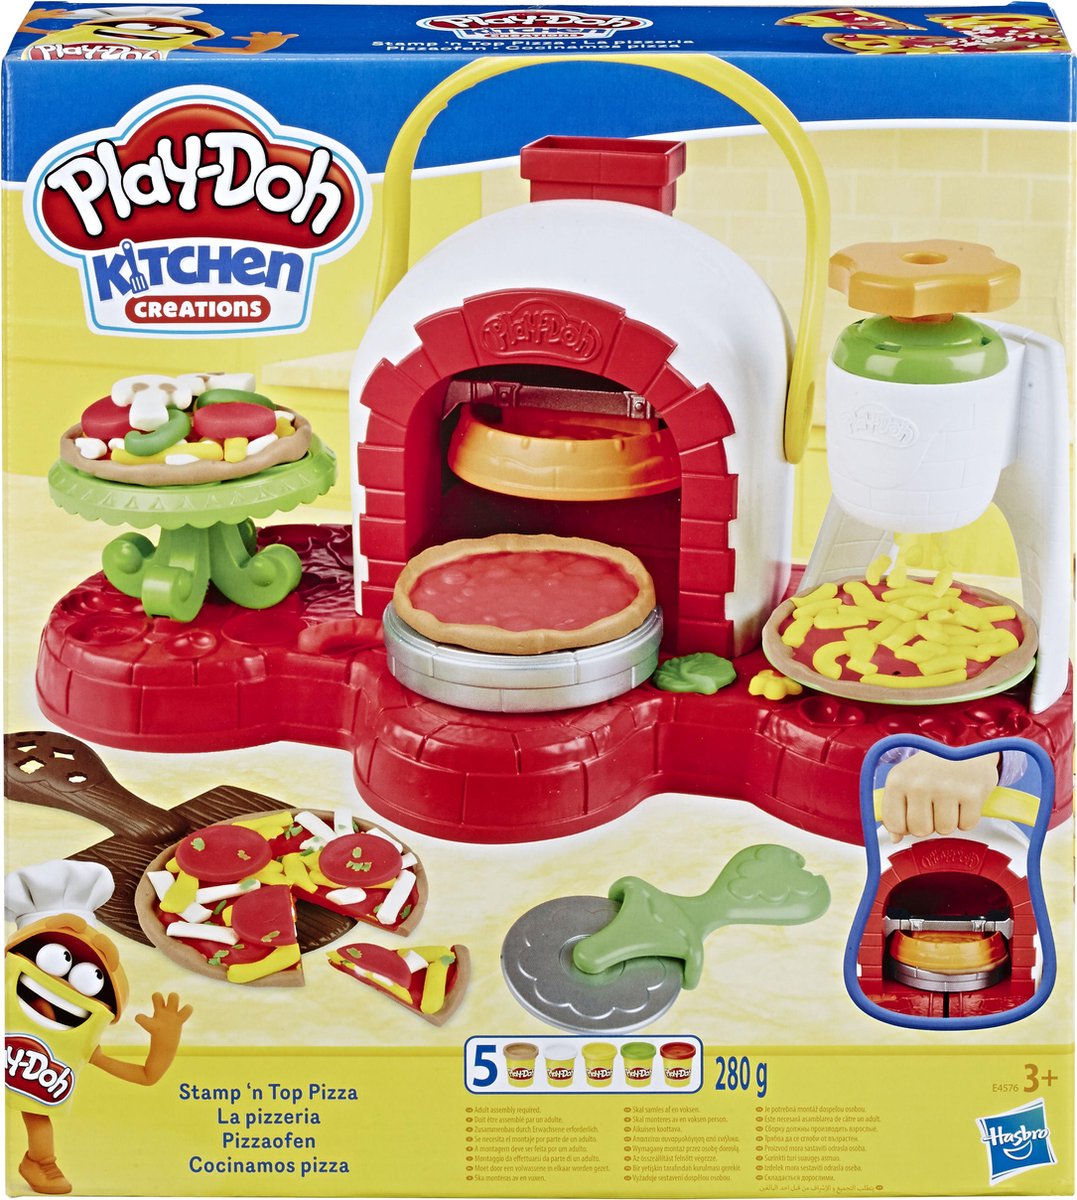 Promo Play-doh caisse enregistreuse chez Auchan